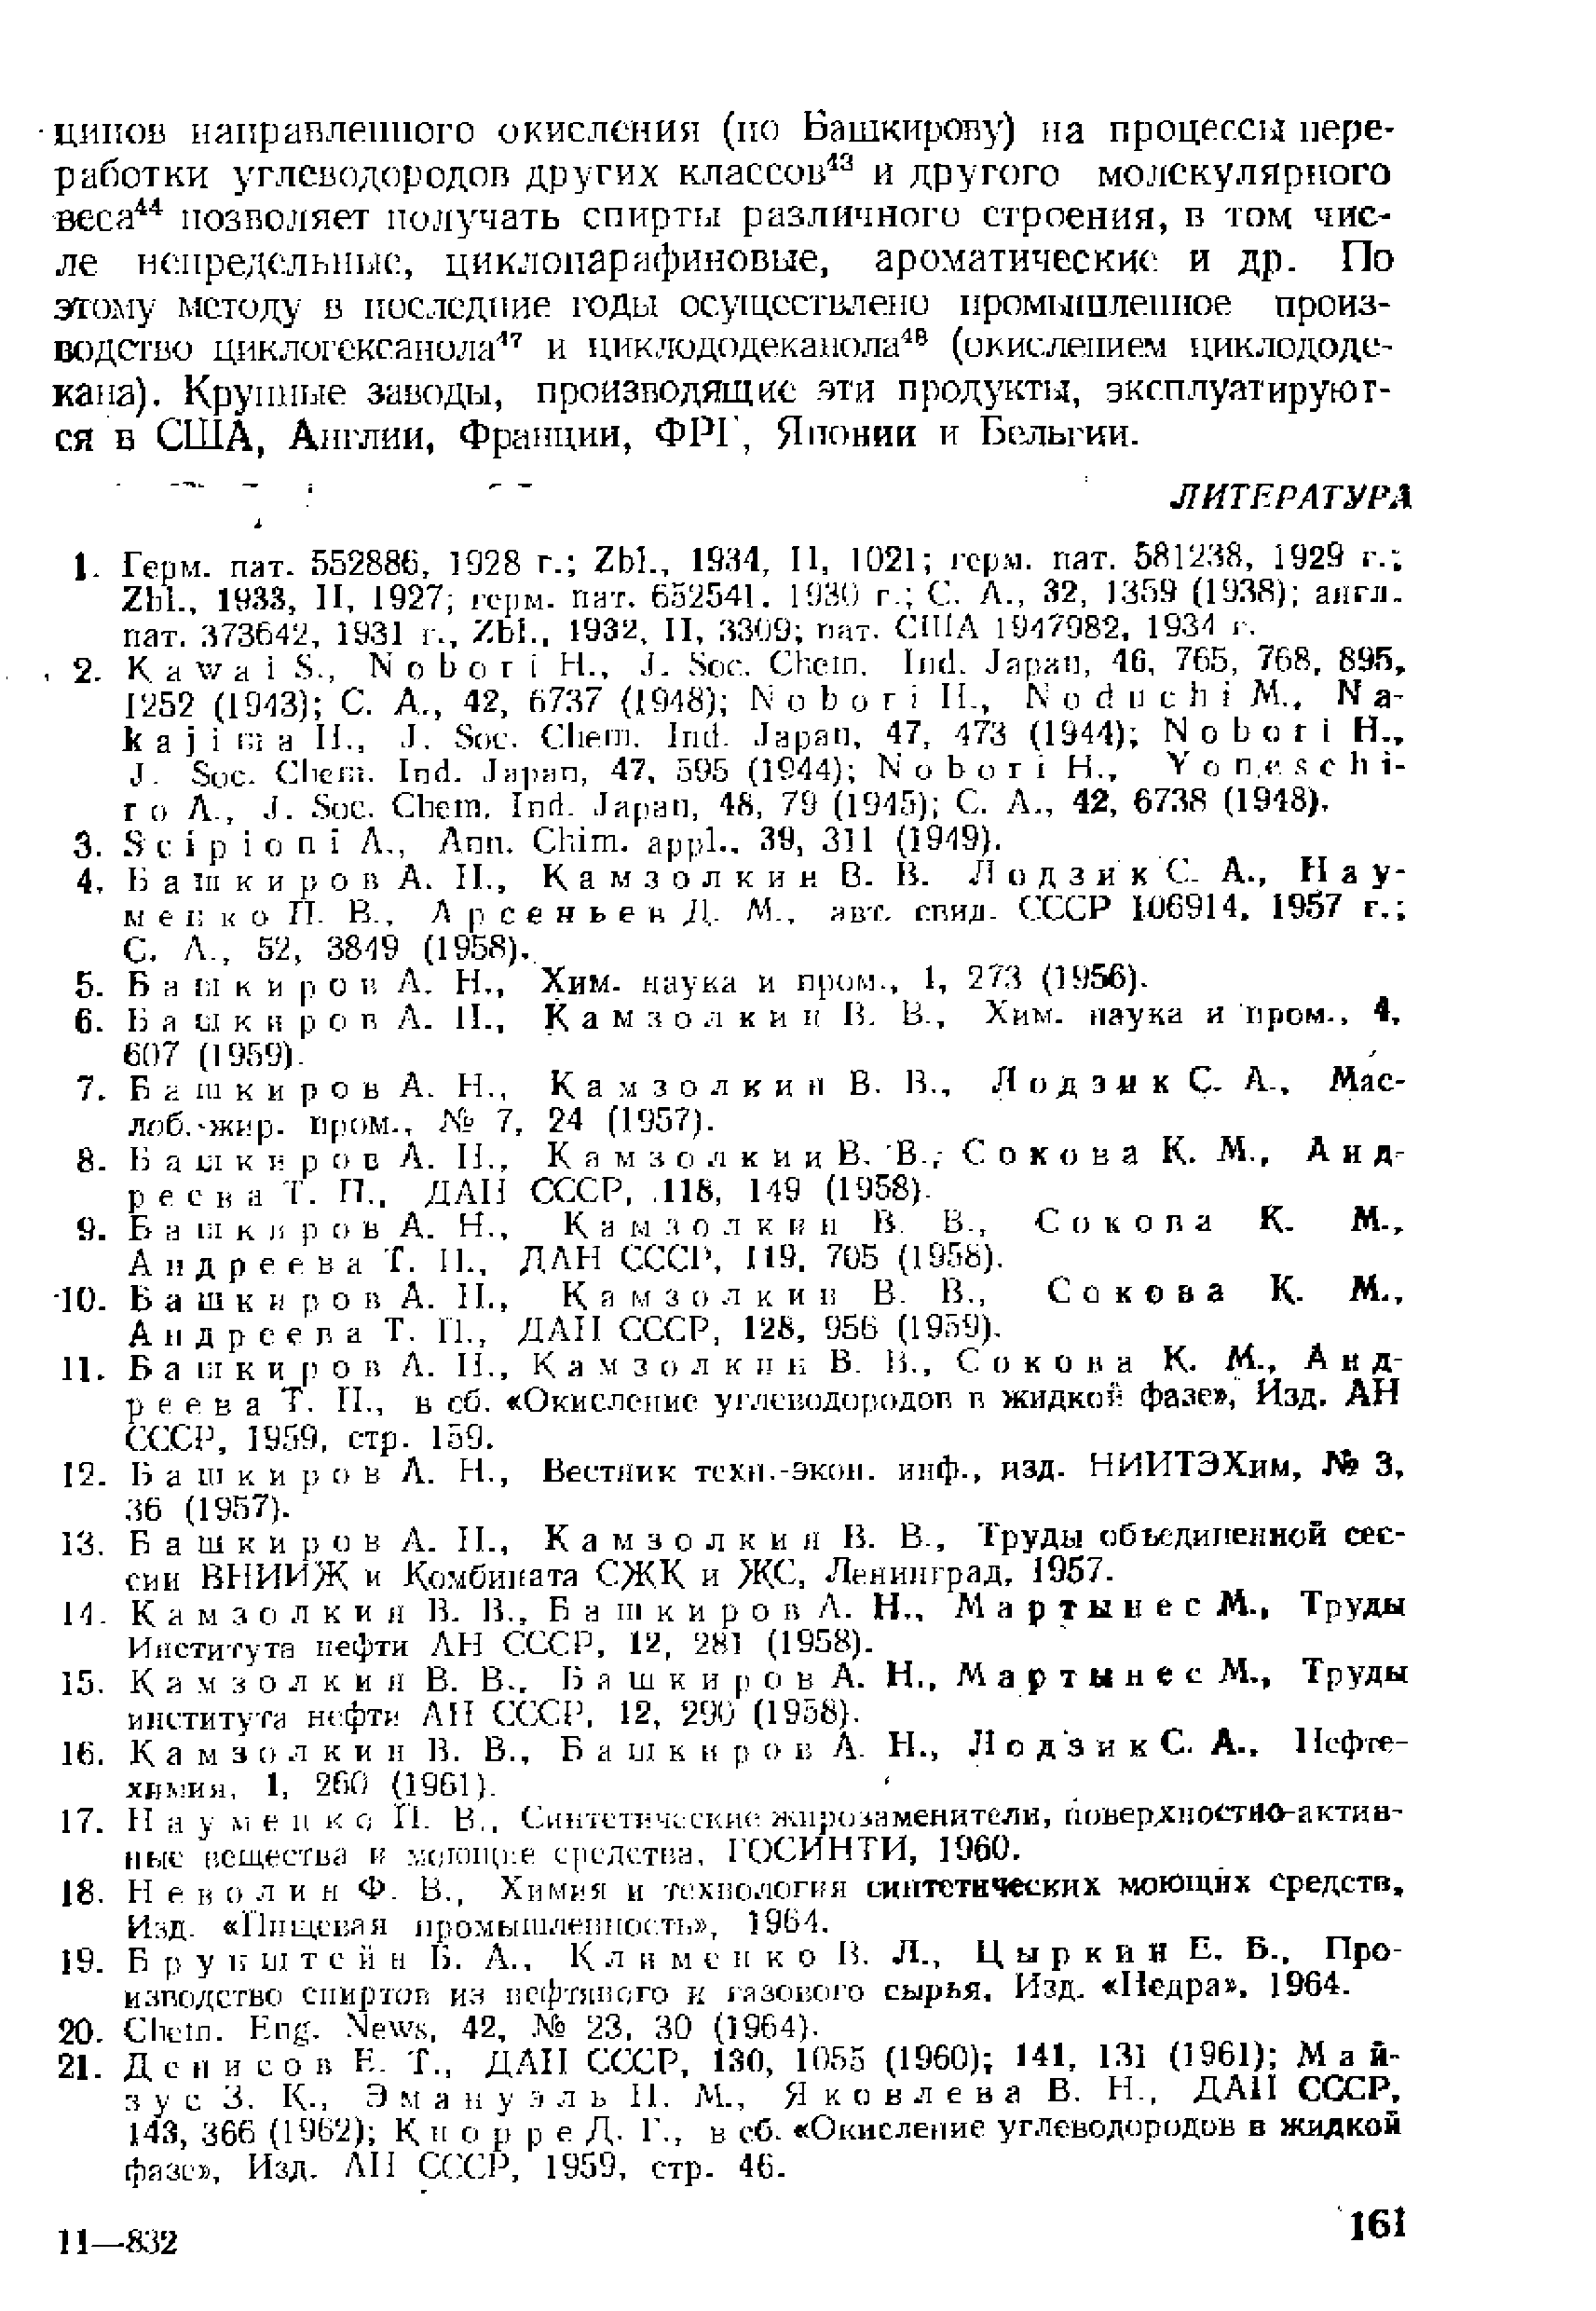 Б а i i к И р О I Л, Н,, Хим. наука и пром., 1, 273 (1956).